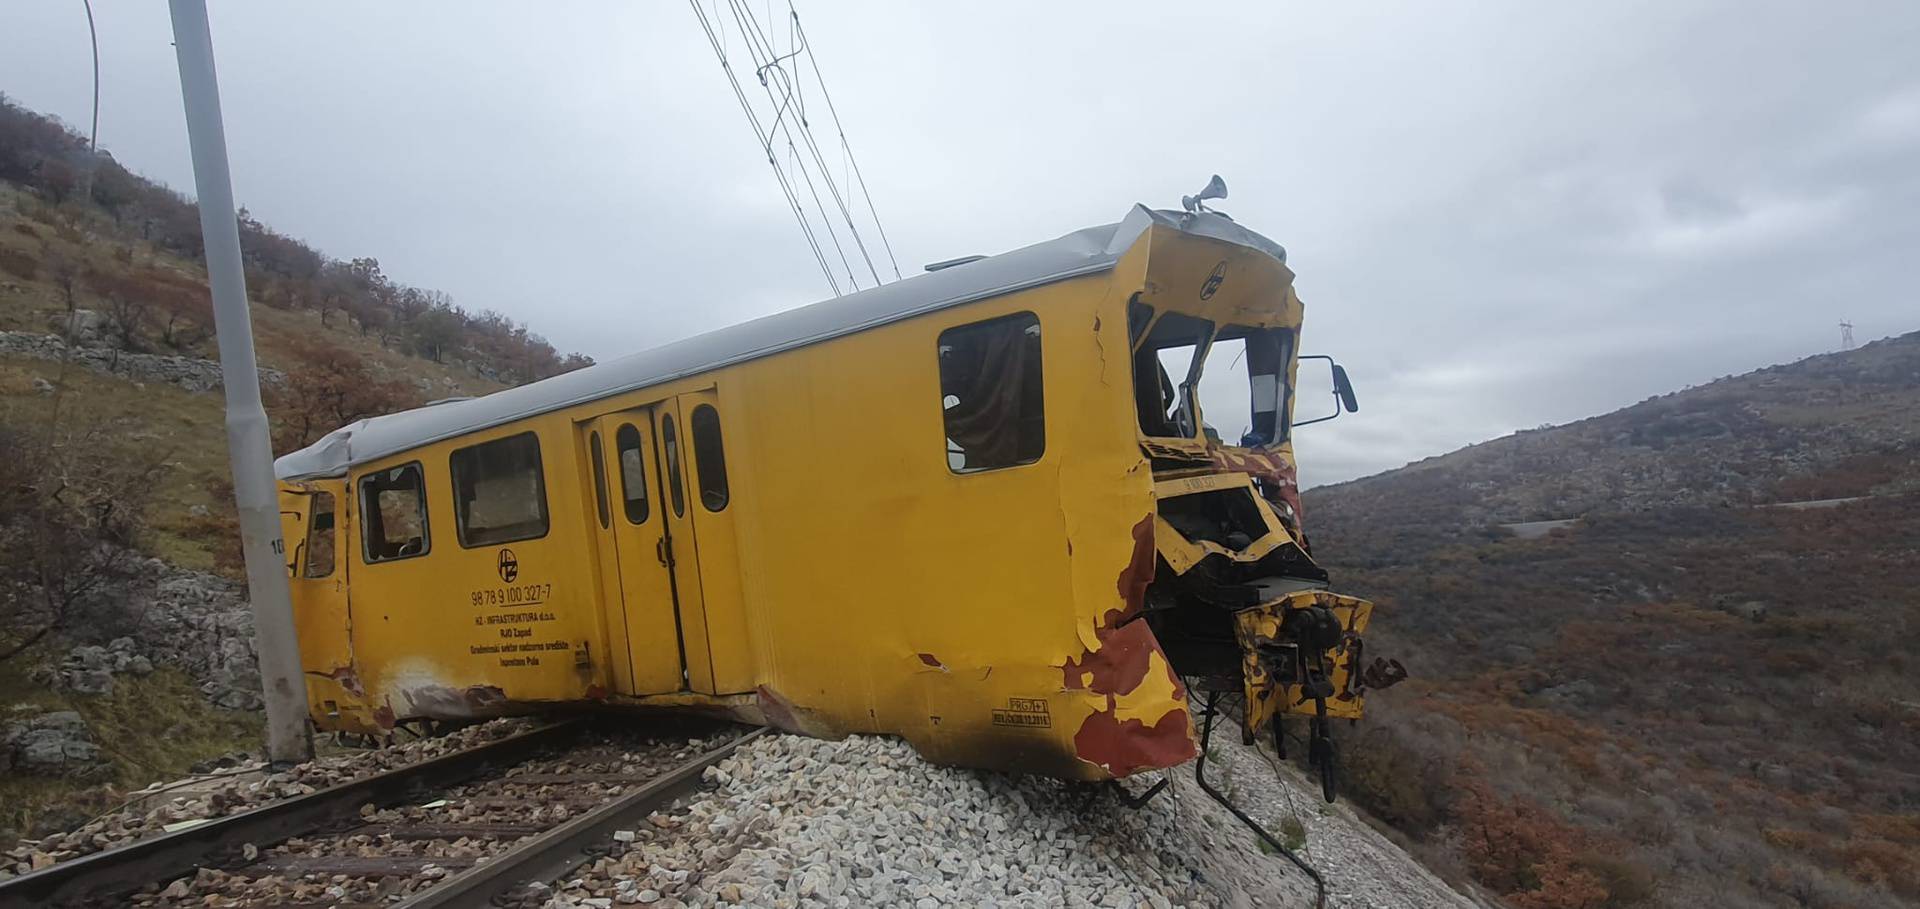 Prometnici zaustavljali jureći vlak: 'Javili su strojovođi, on je skočio i spašavao živu glavu'